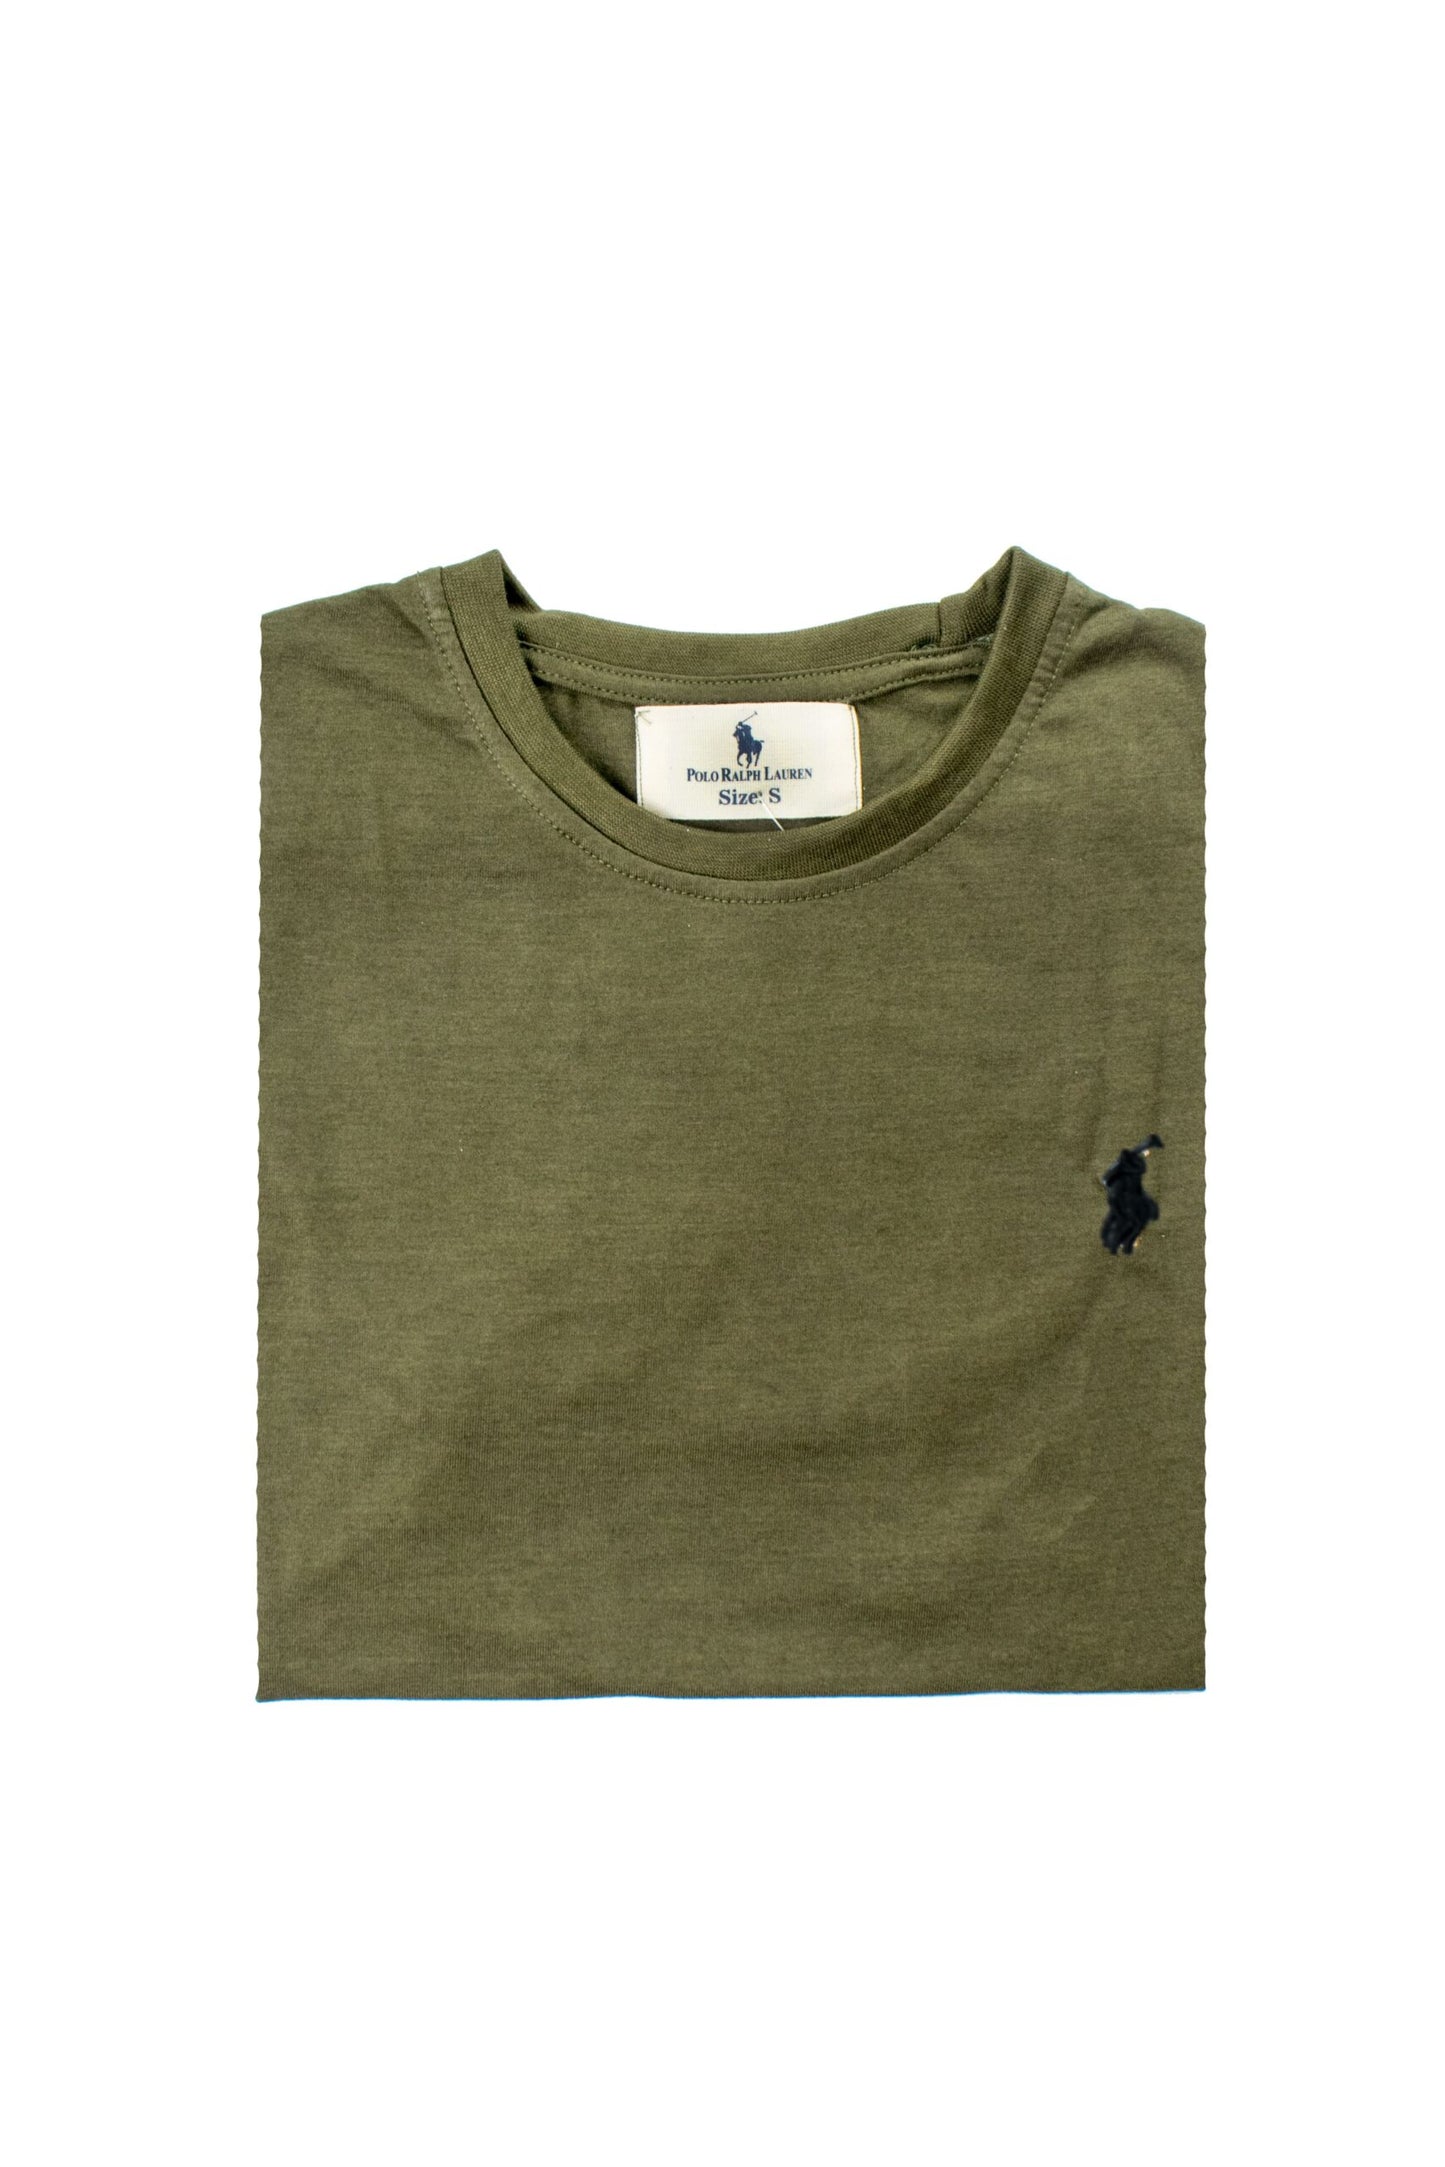 RL Basic T Shirt – Olive